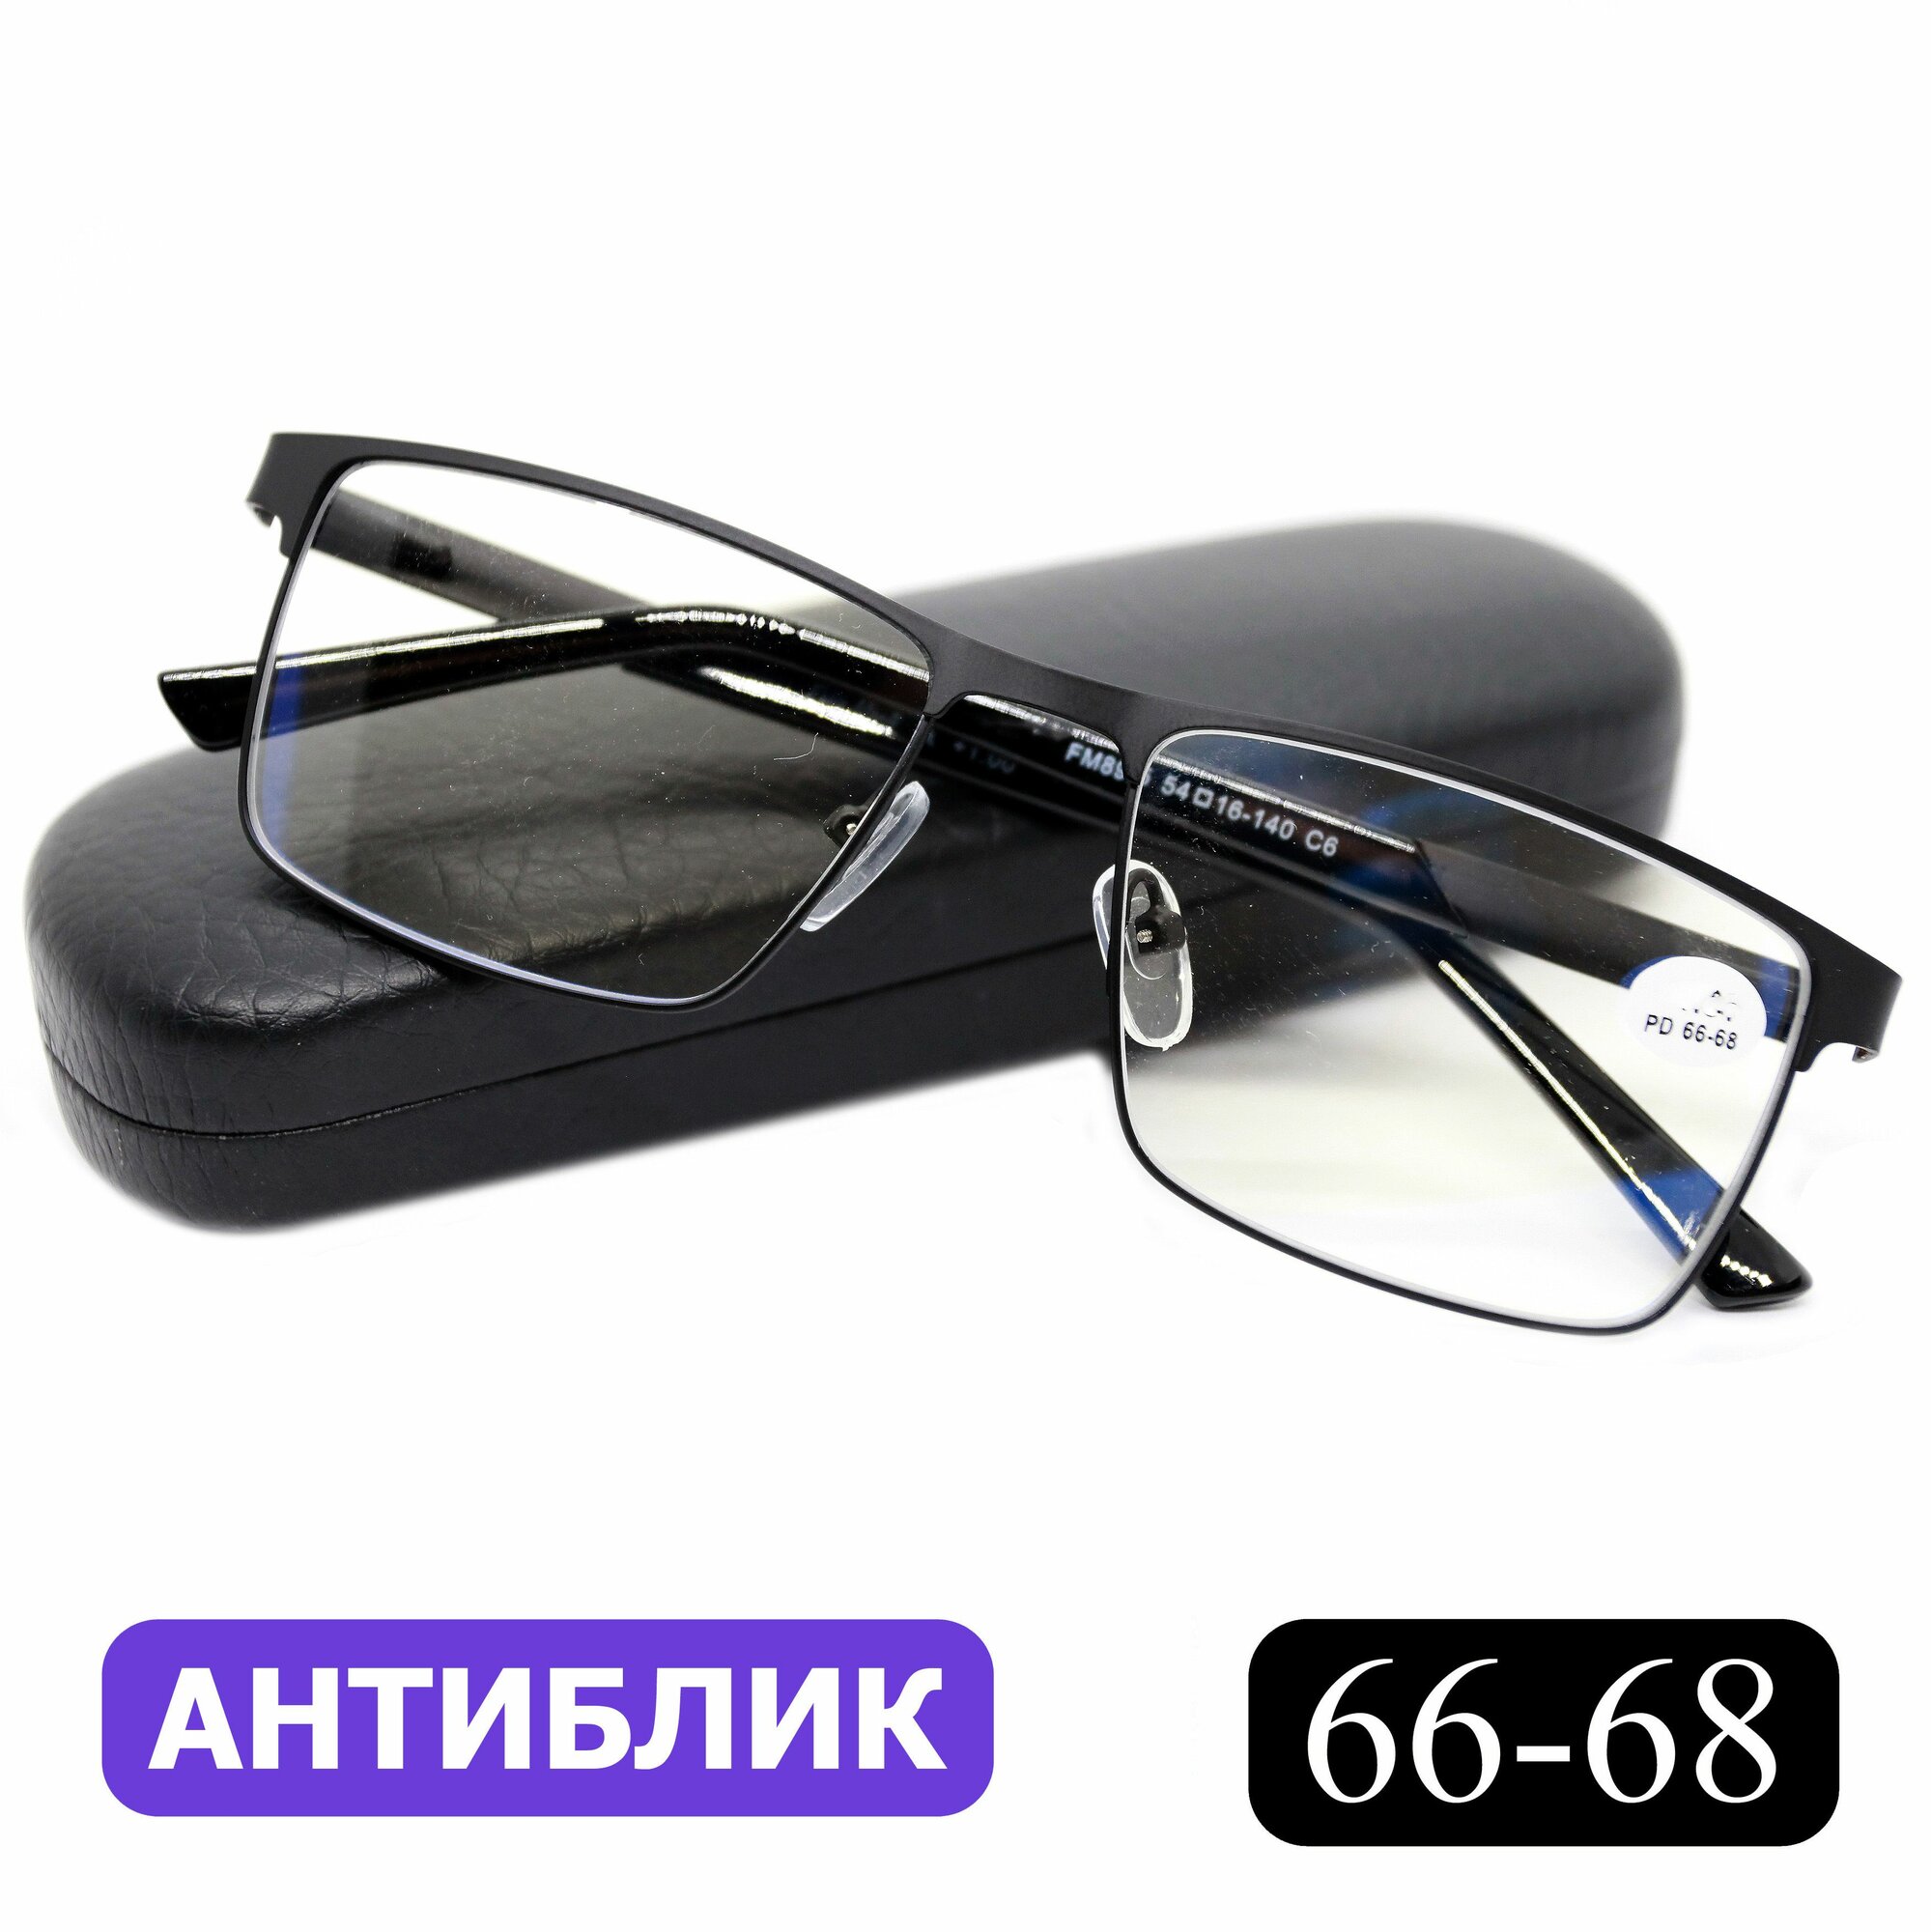 Готовые очки для чтения РЦ 66-68 с диоптриями (+3.50) FABIA MONTI 8985 C6, с футляром, цвет черный, линзы антиблик, РЦ 66-68